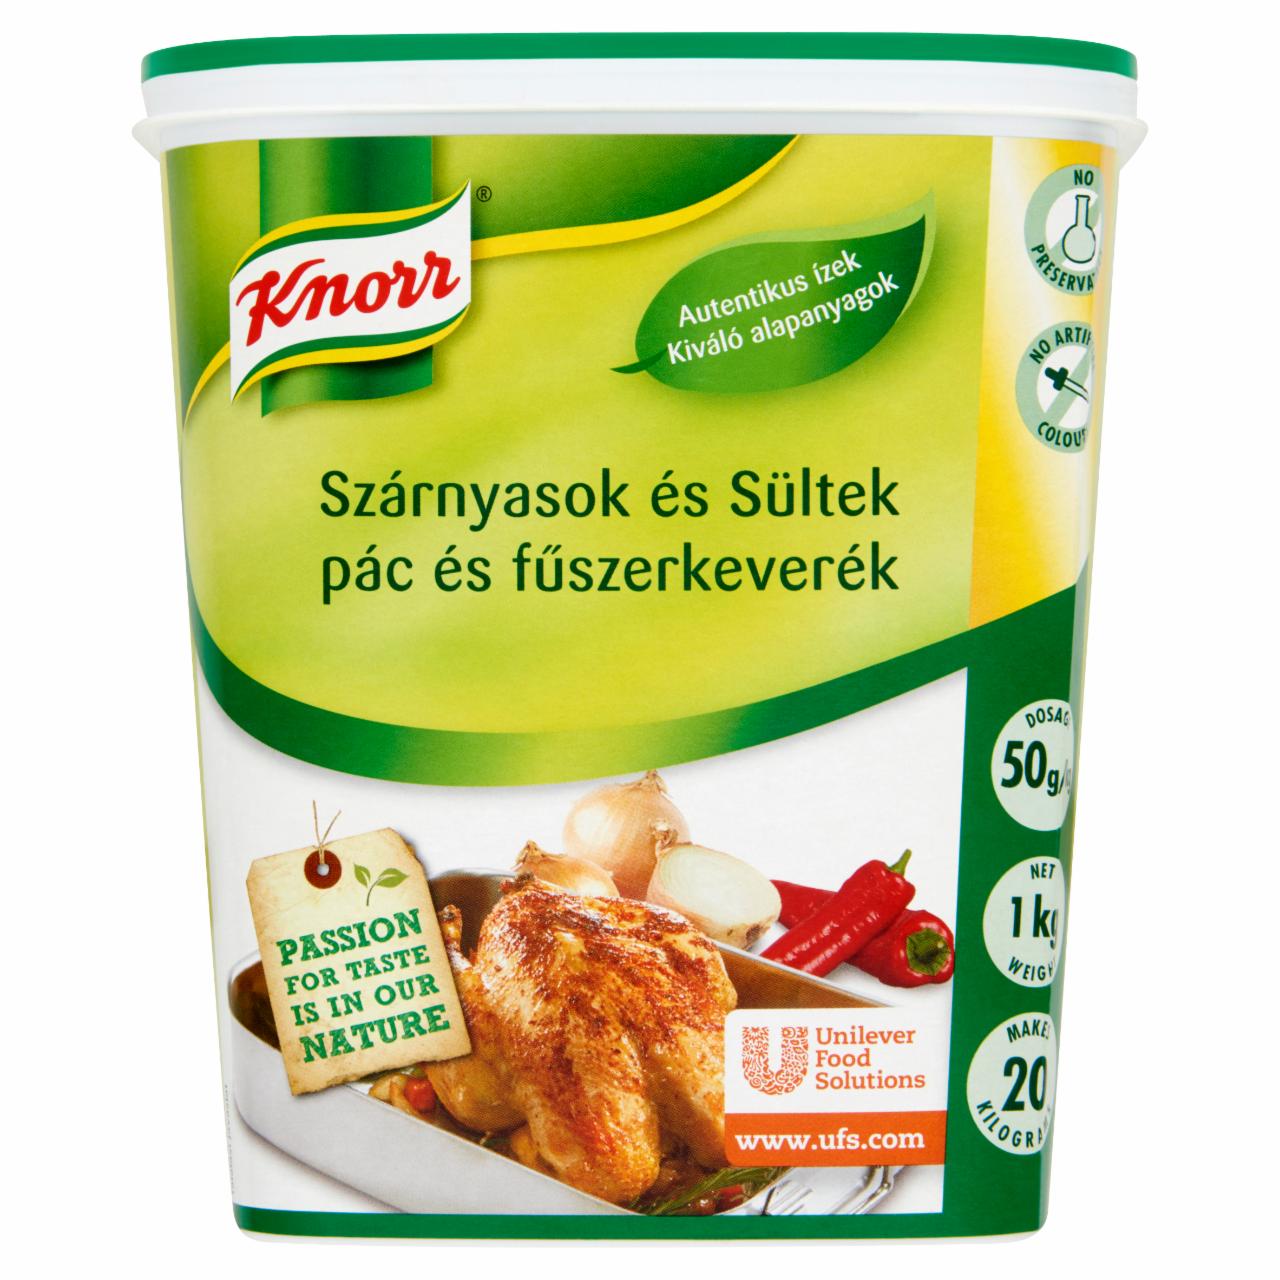 Képek - Knorr Szárnyasok és Sültek pác és fűszerkeverék 1 kg